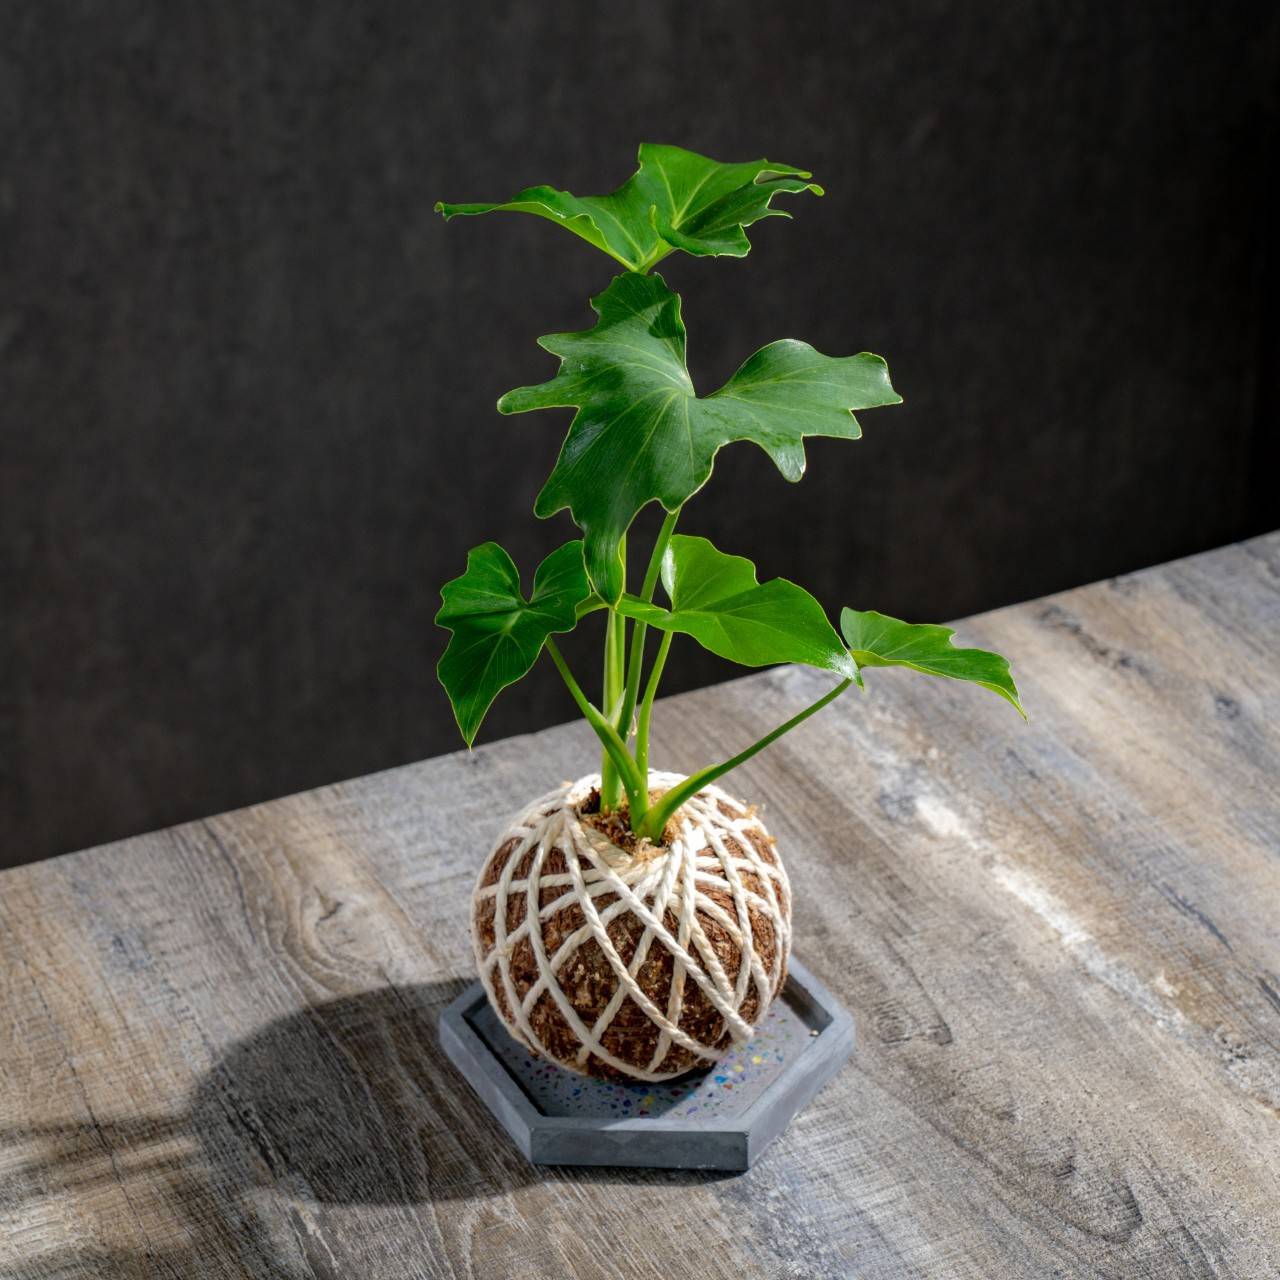 苔球植物 小天使水苔球 苔玉 適合室內植物 辦公室植物 交換禮物 情人節禮物